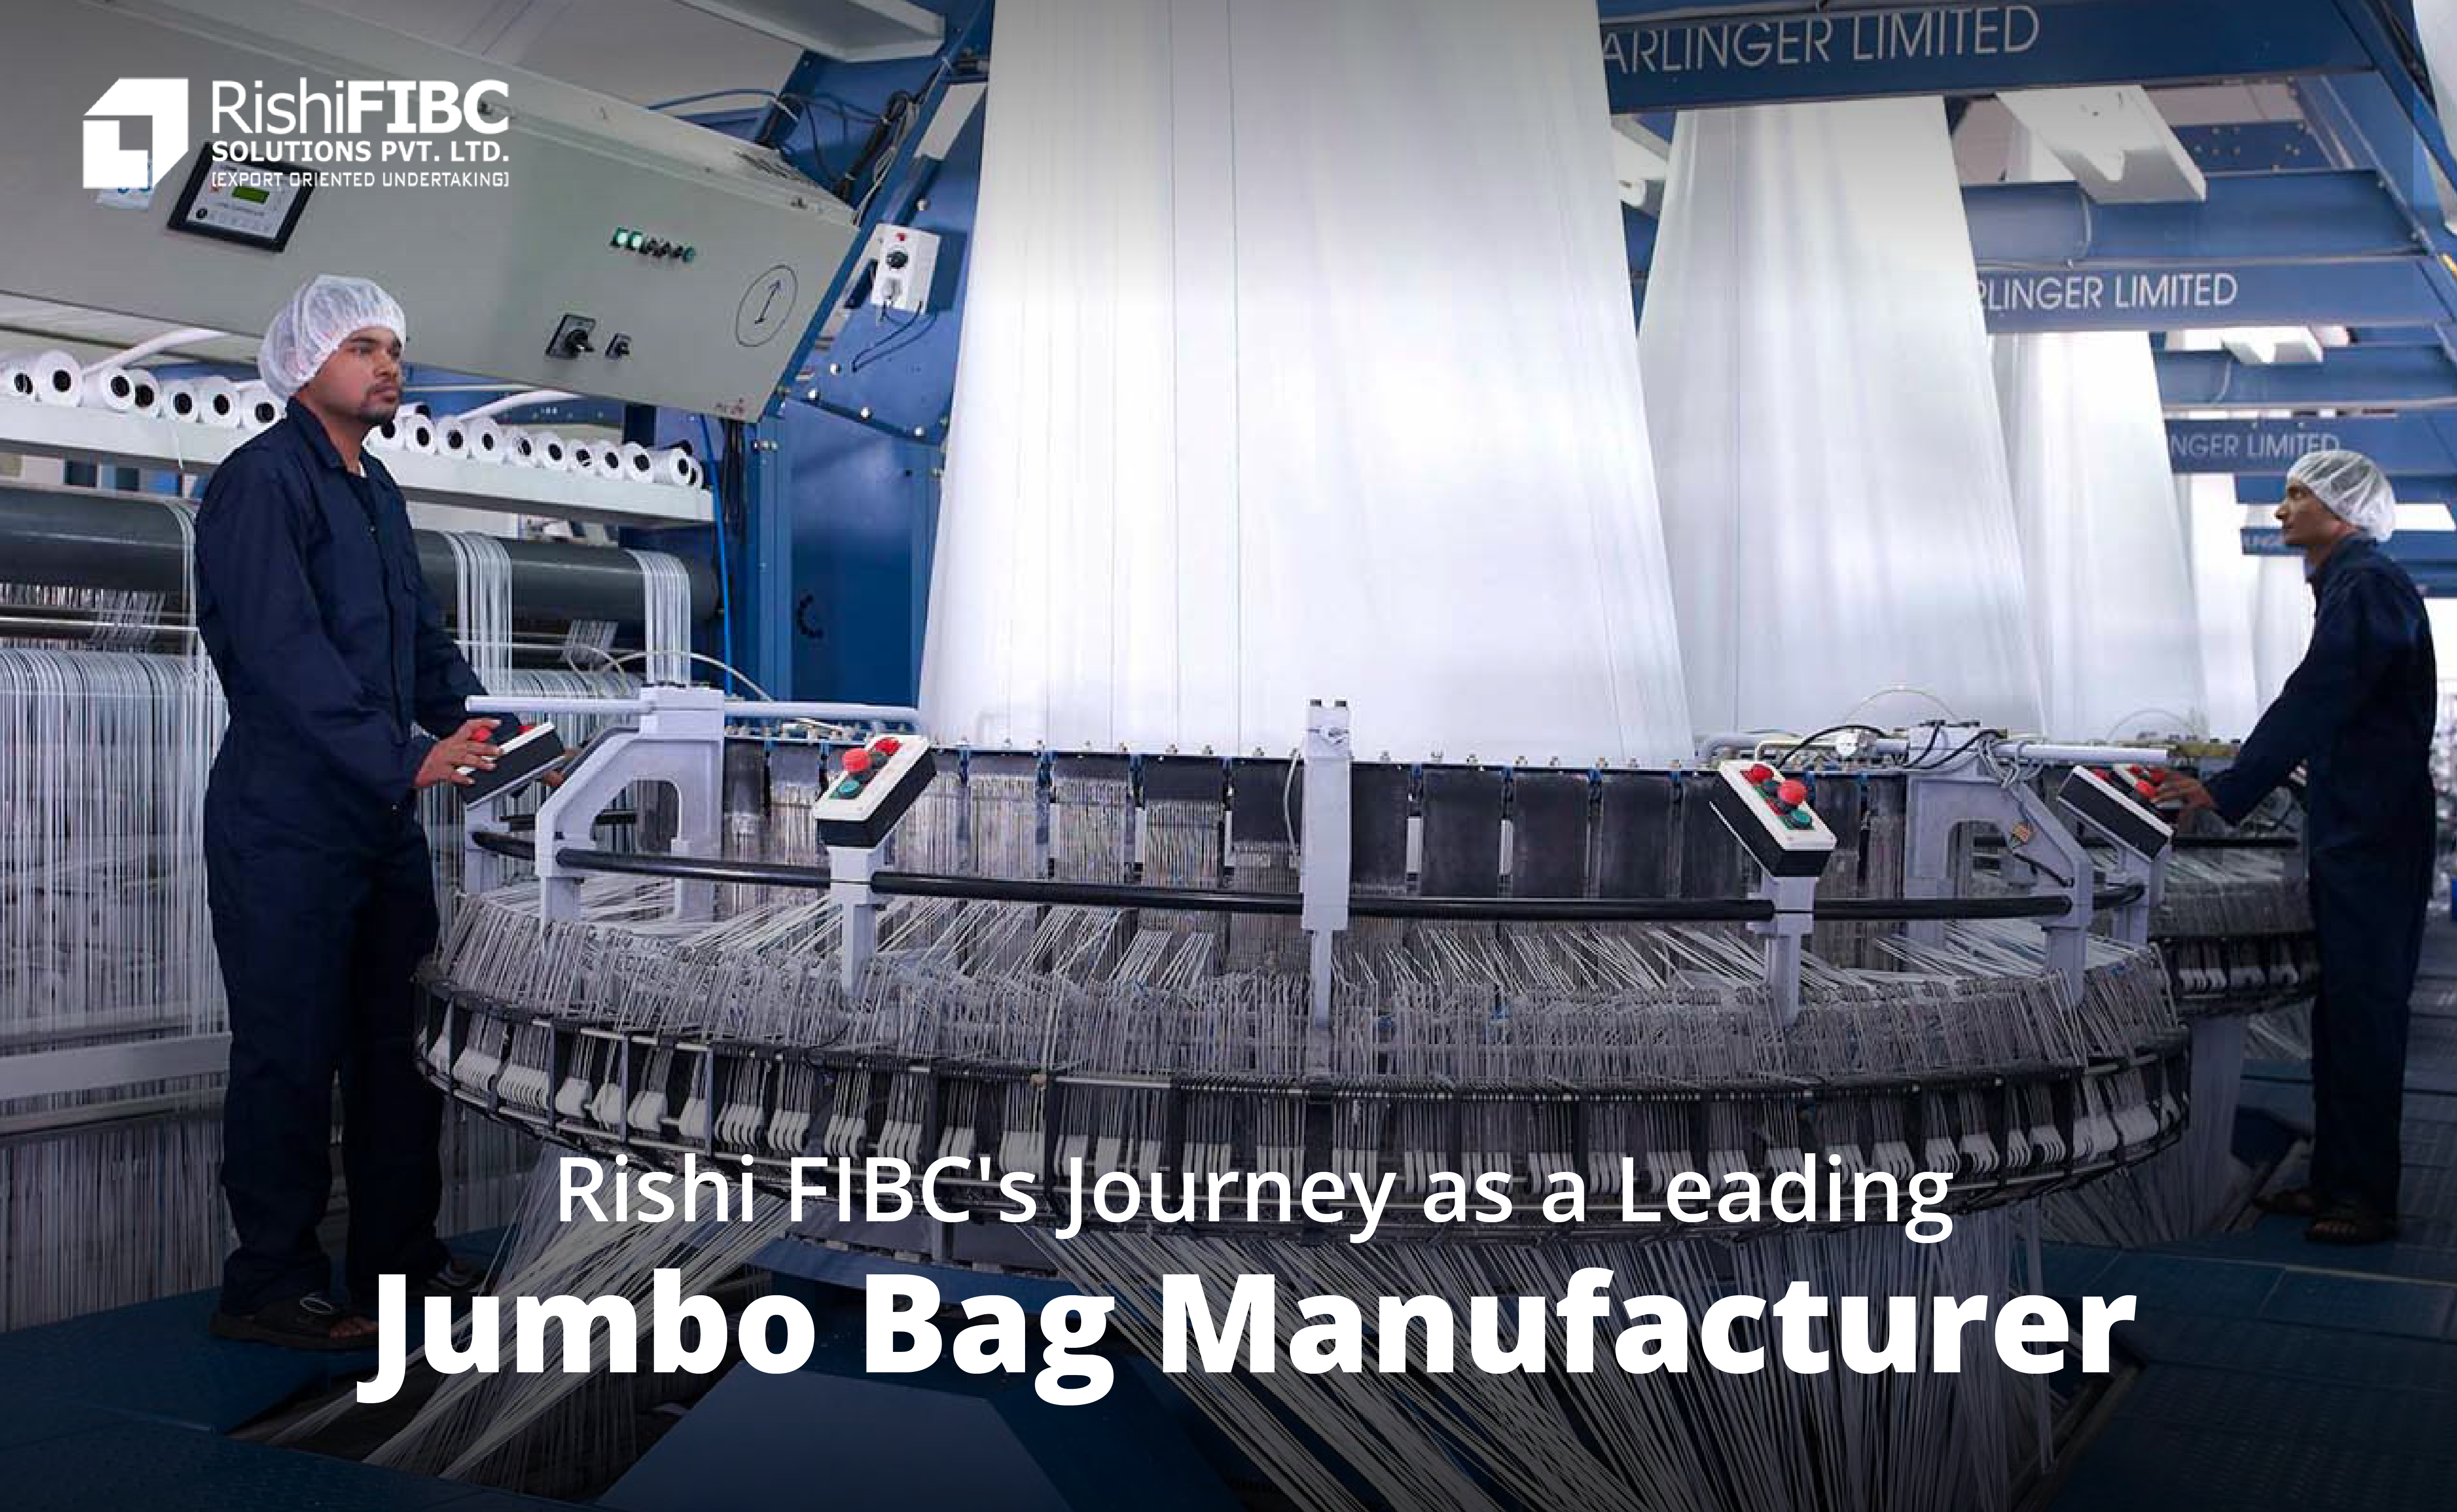 FIBC Jumbo Bag Manufacturer